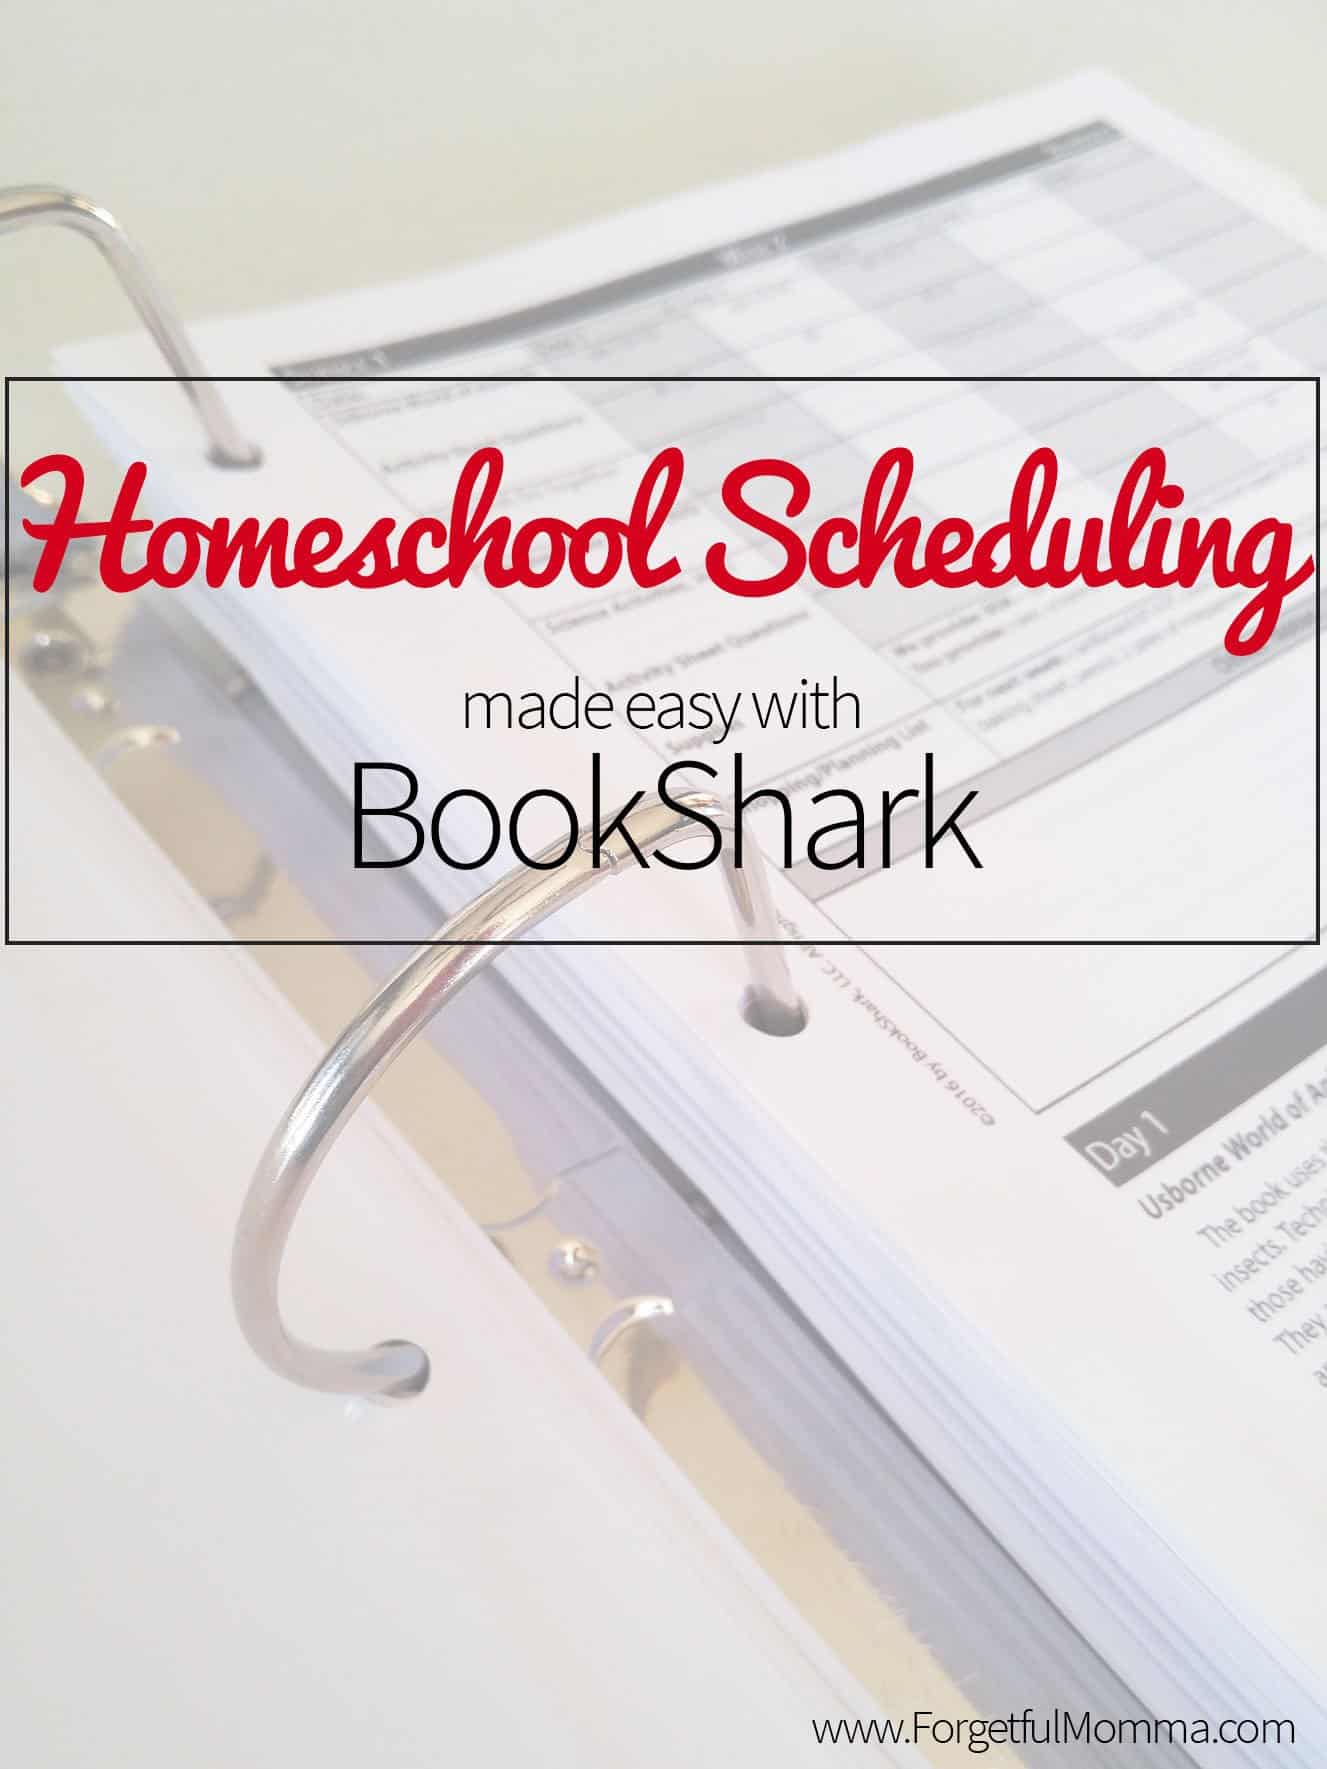 Homeschool Scheduling made easy with BookShark